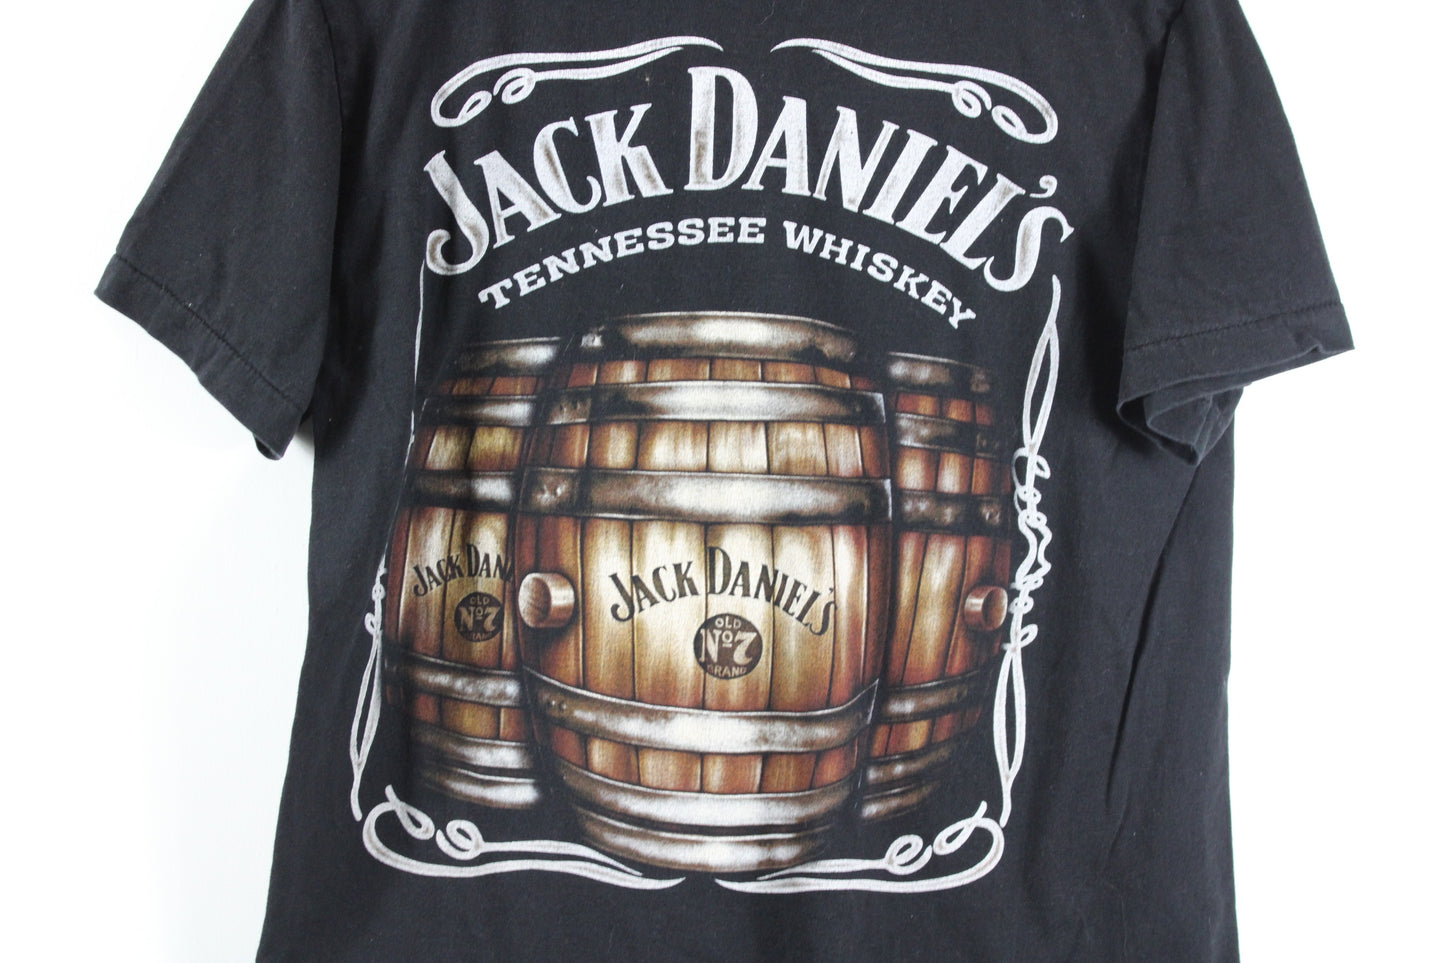 Jack Daniels T-Shirt